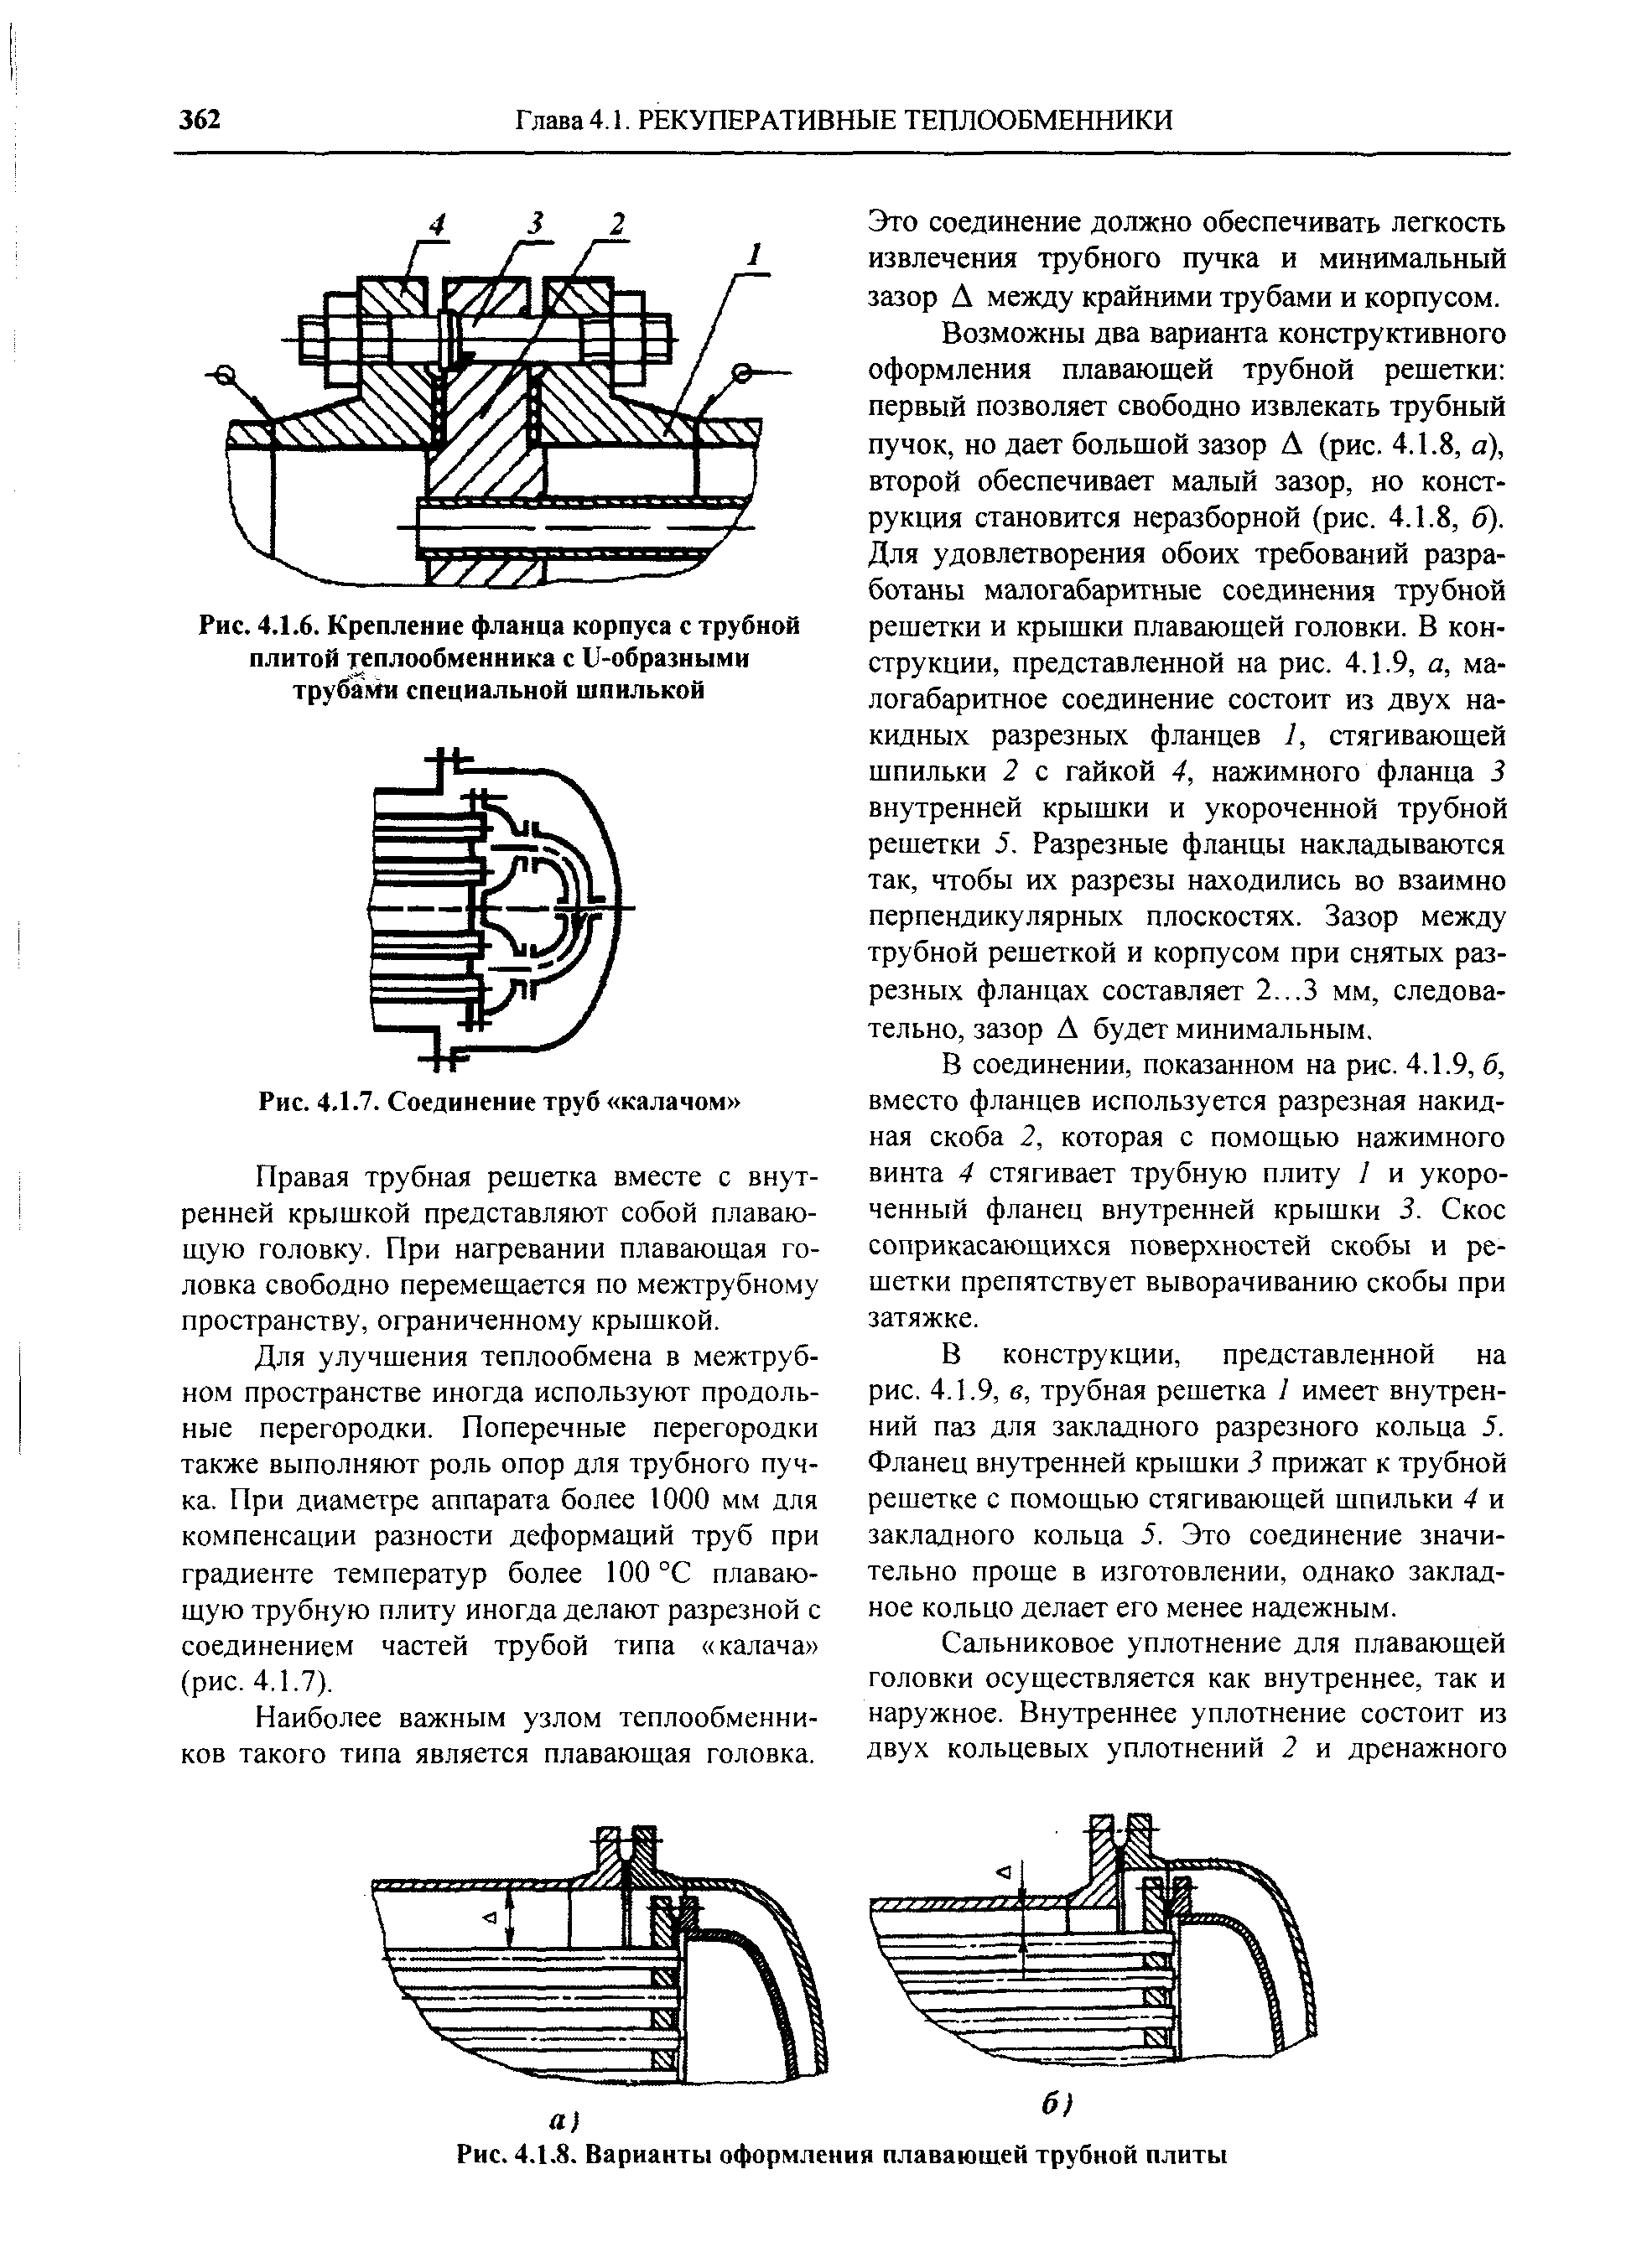 Рис. 4.1.6. Крепление фланца корпуса с трубной плитой теплообменника с U-образными Tpydaivhi специальной шпилькой
